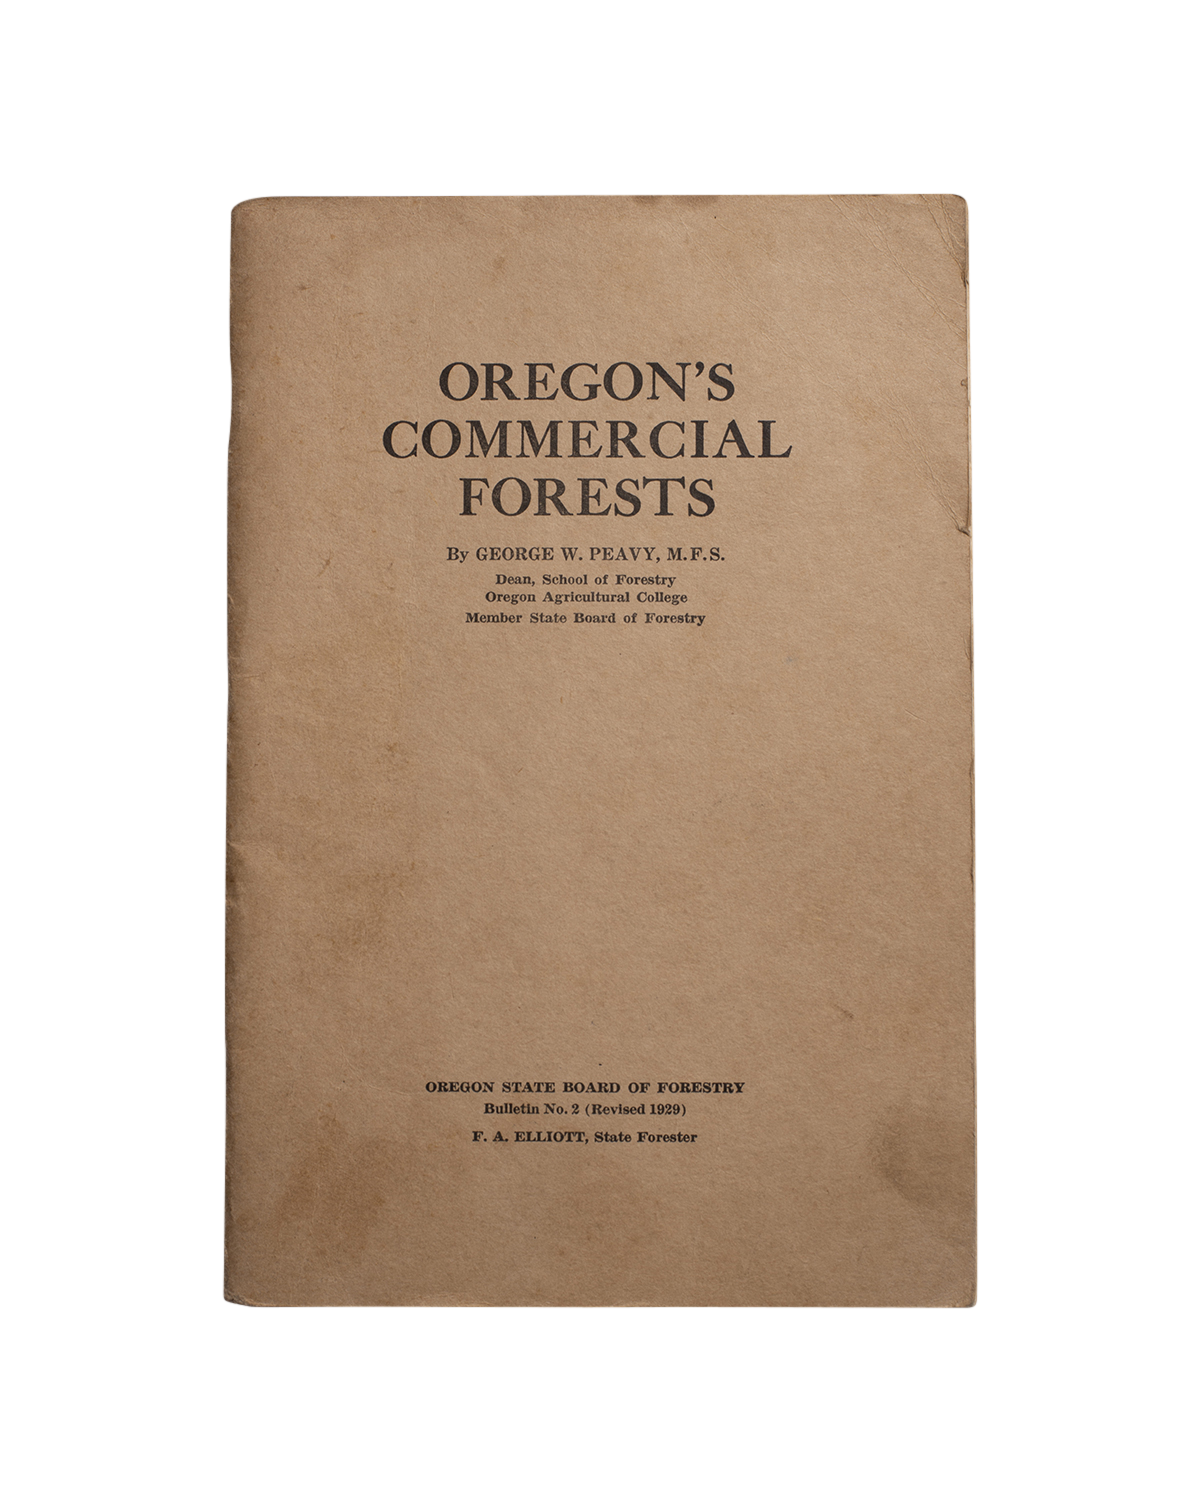 Manual de bosques comerciales de Oregón